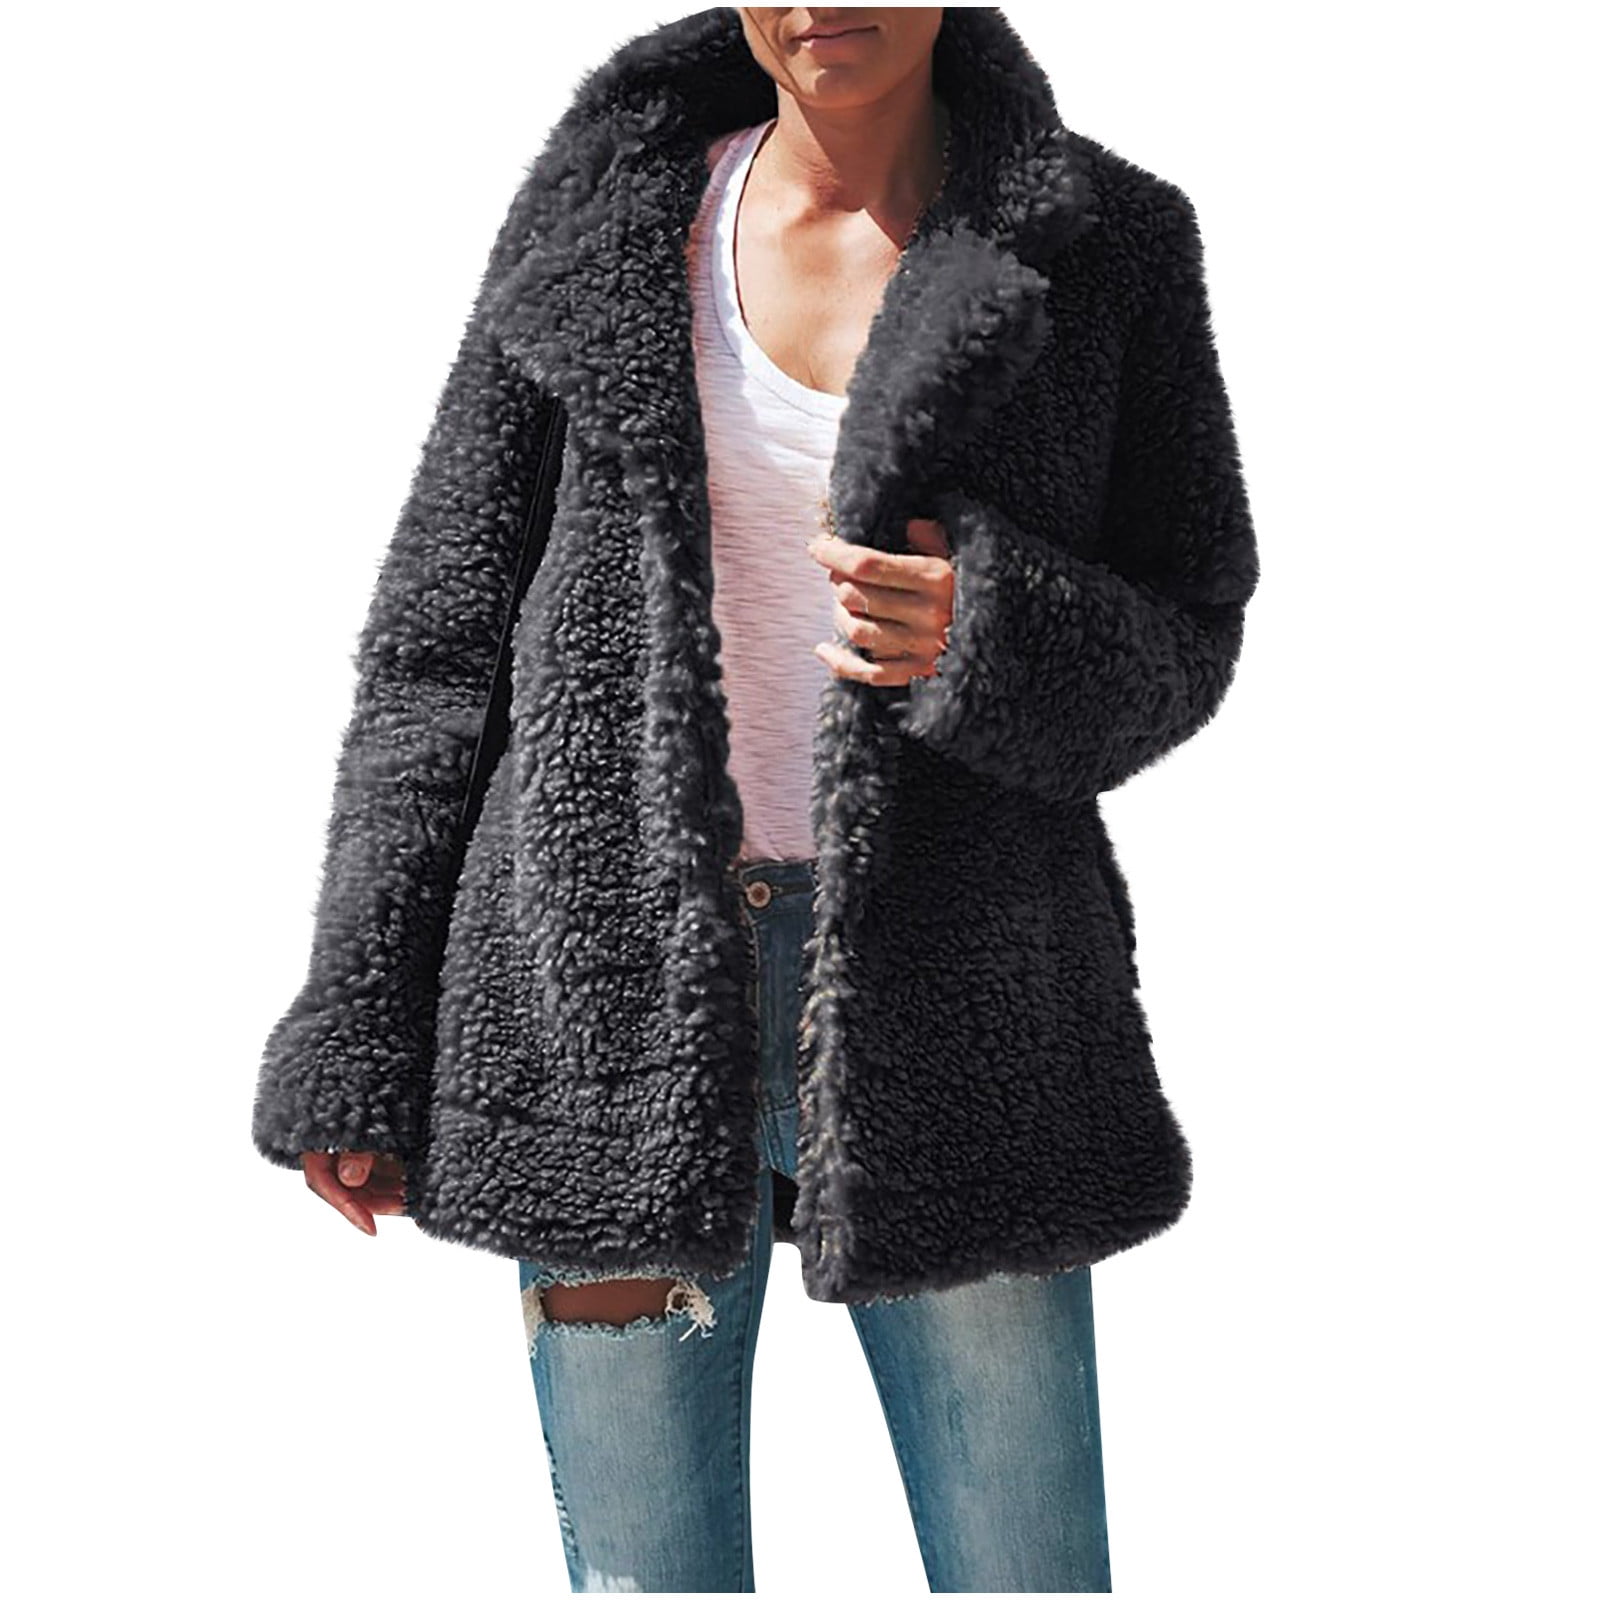 Winter Cute Teddy Coats for Women Fluffy Jacket Heavy Sherpa Fleece ...